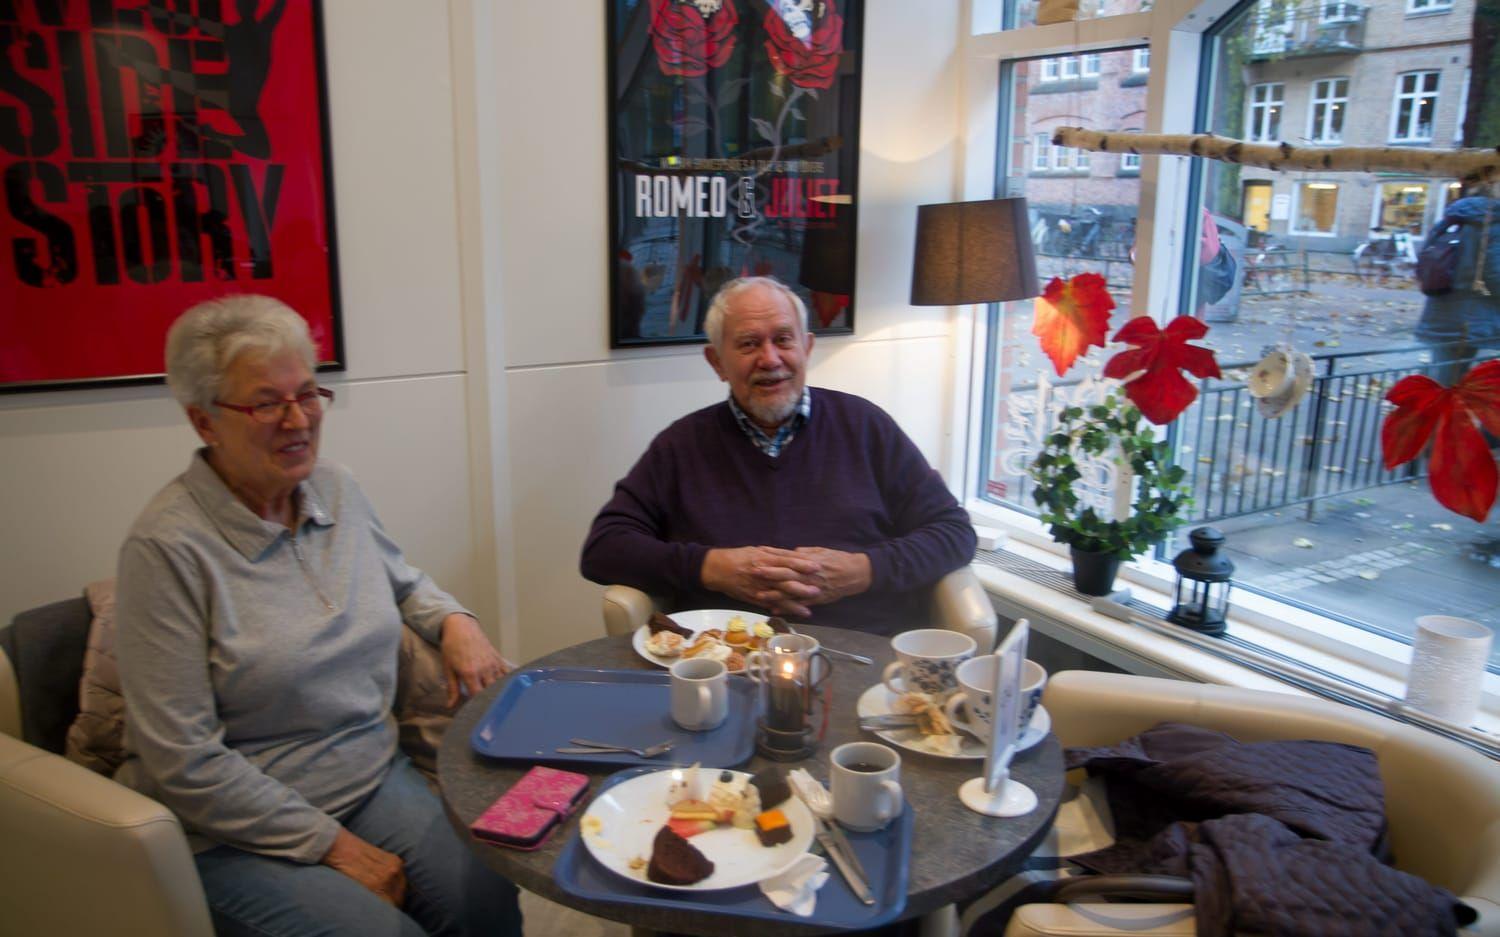 Två av tre i sällkapet är Anne-Gerd Kvitvik och Lasse Westman. För Lasse är det första gången han avnjuter afternoon tea. ”Det var gott allt ihop”, säger han.